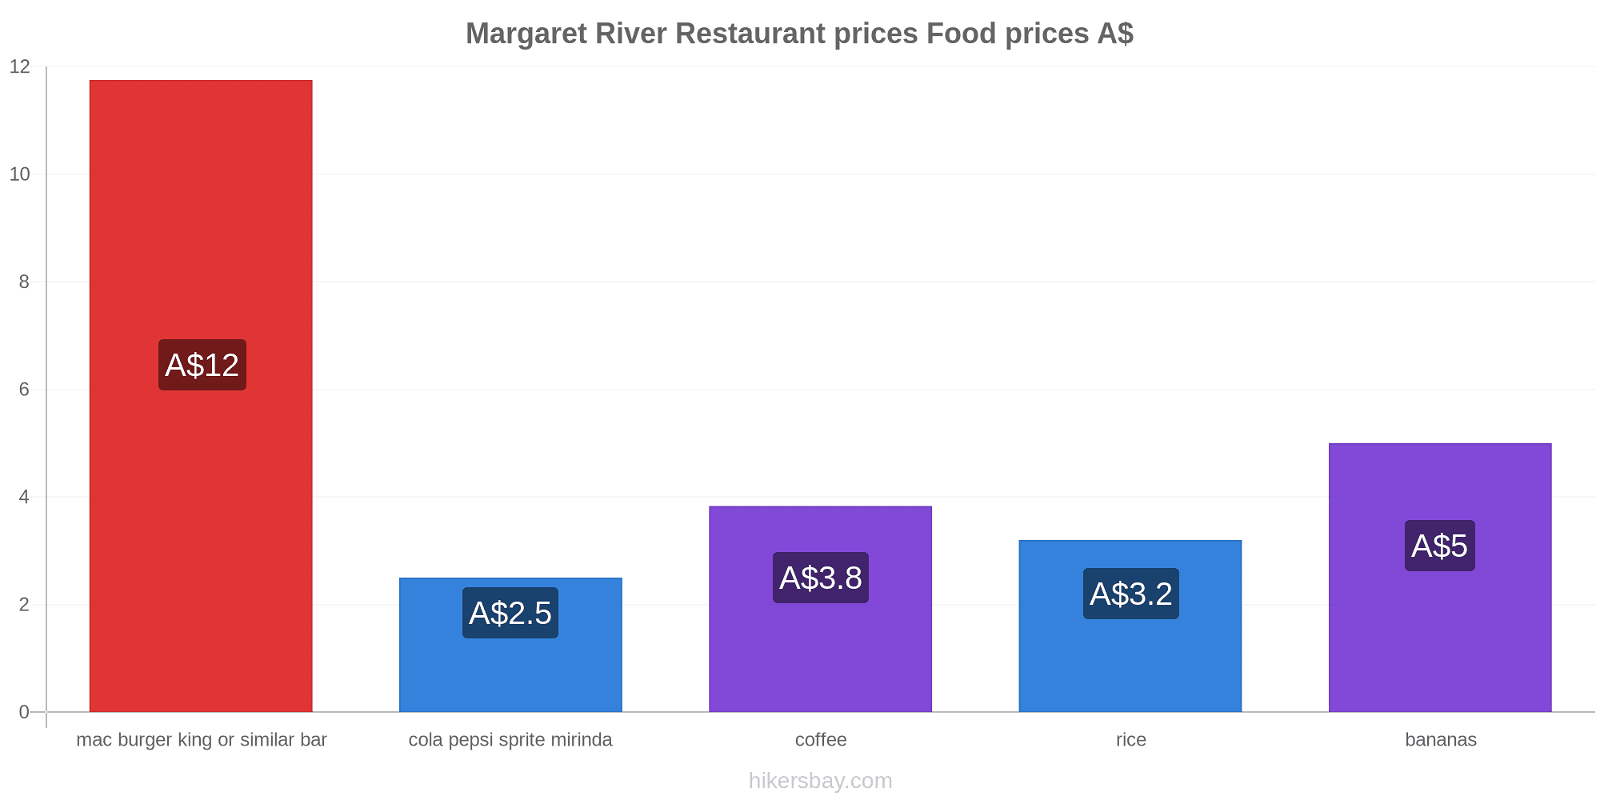 Margaret River price changes hikersbay.com